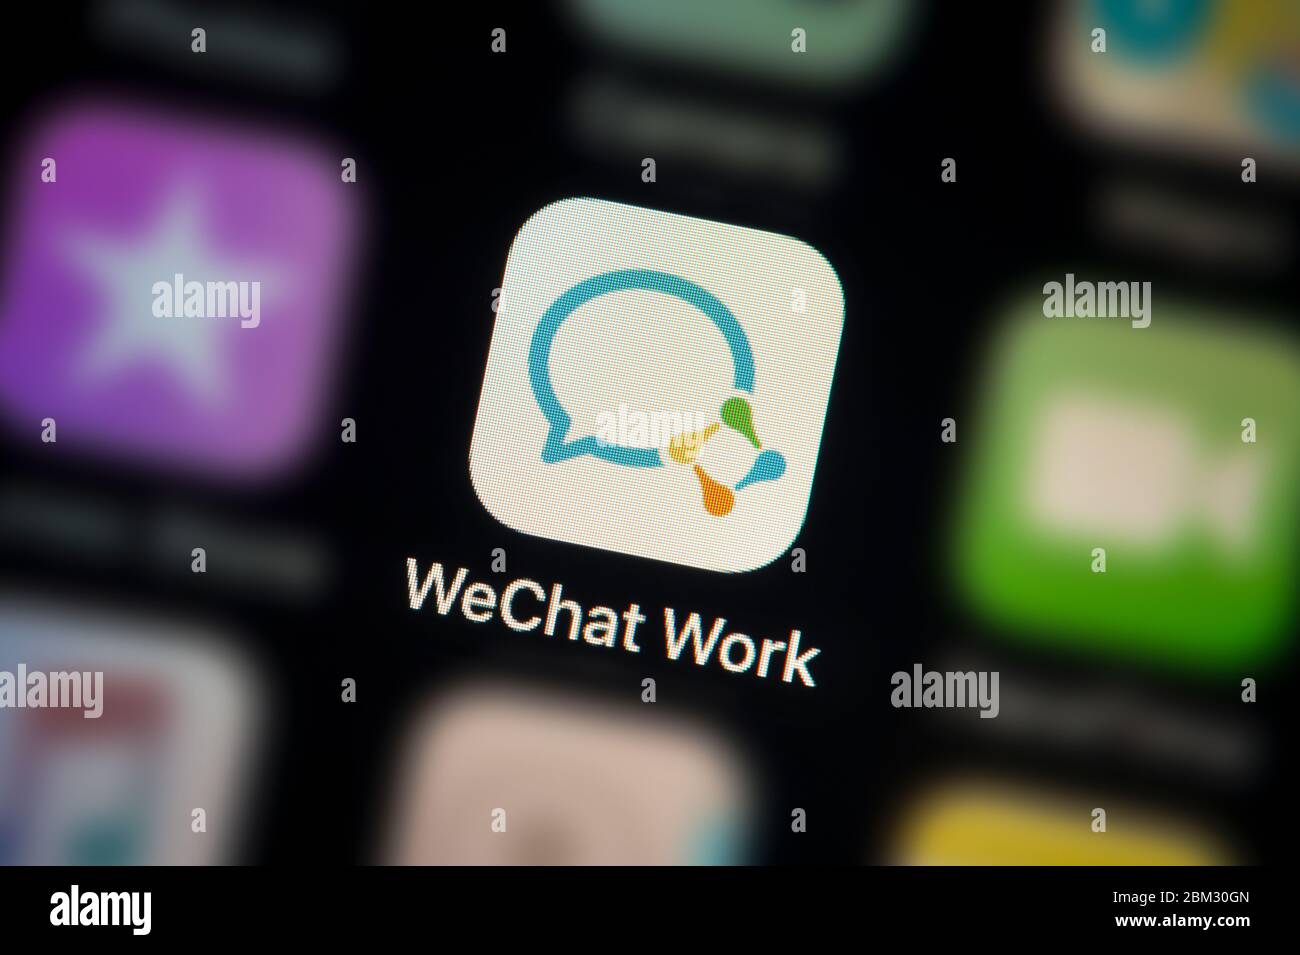 Nahaufnahme des WeChat Work App-Symbols, wie auf dem Bildschirm eines Smartphones zu sehen (nur für redaktionelle Verwendung) Stockfoto